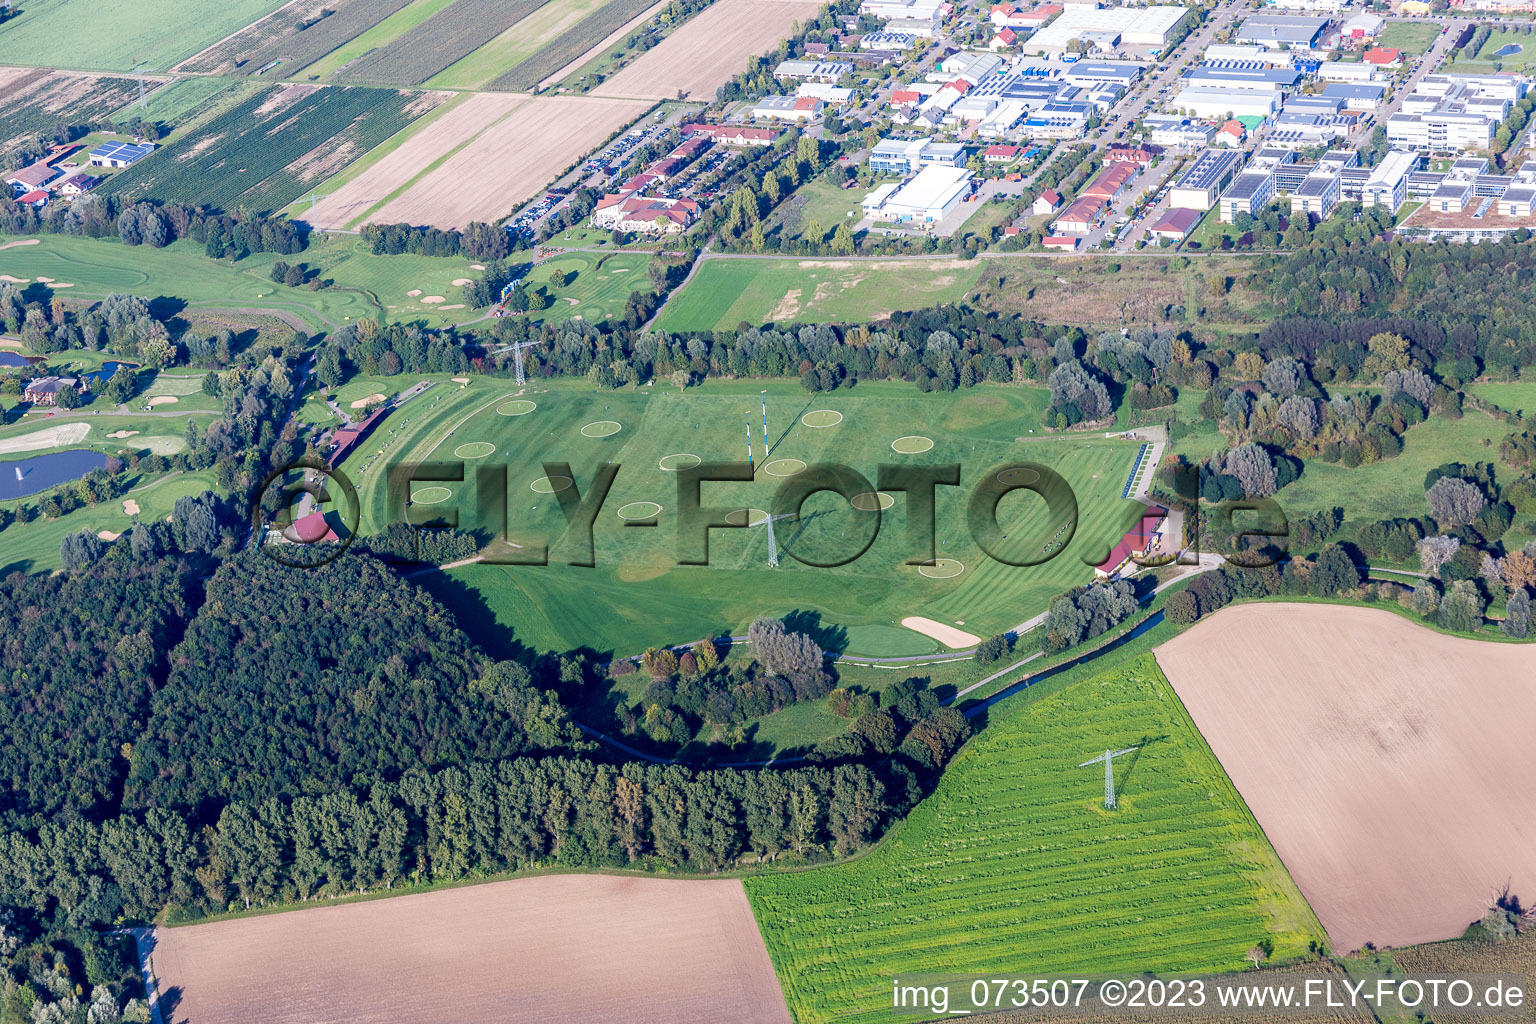 Luftbild von Gelände des Golfplatz des Golf Club St. Leon-Rot in Sankt Leon-Rot im Bundesland Baden-Württemberg, Deutschland